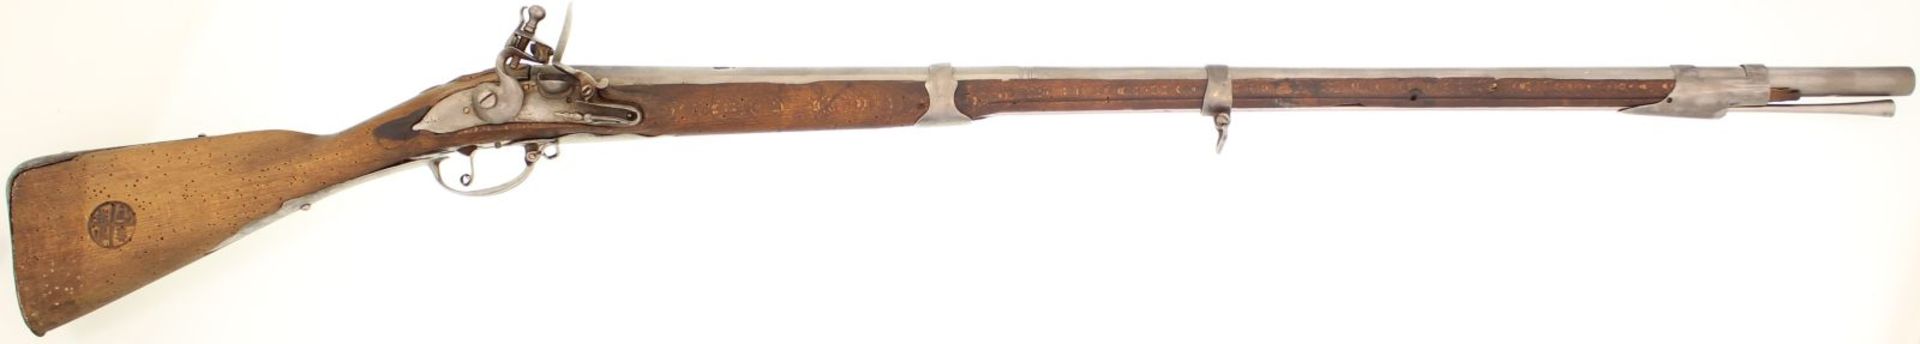 Steinschlossgewehr, deutsch oder österreichisch um 1740, Kal. 18mm, Lauflänge 101cm, Totallänge